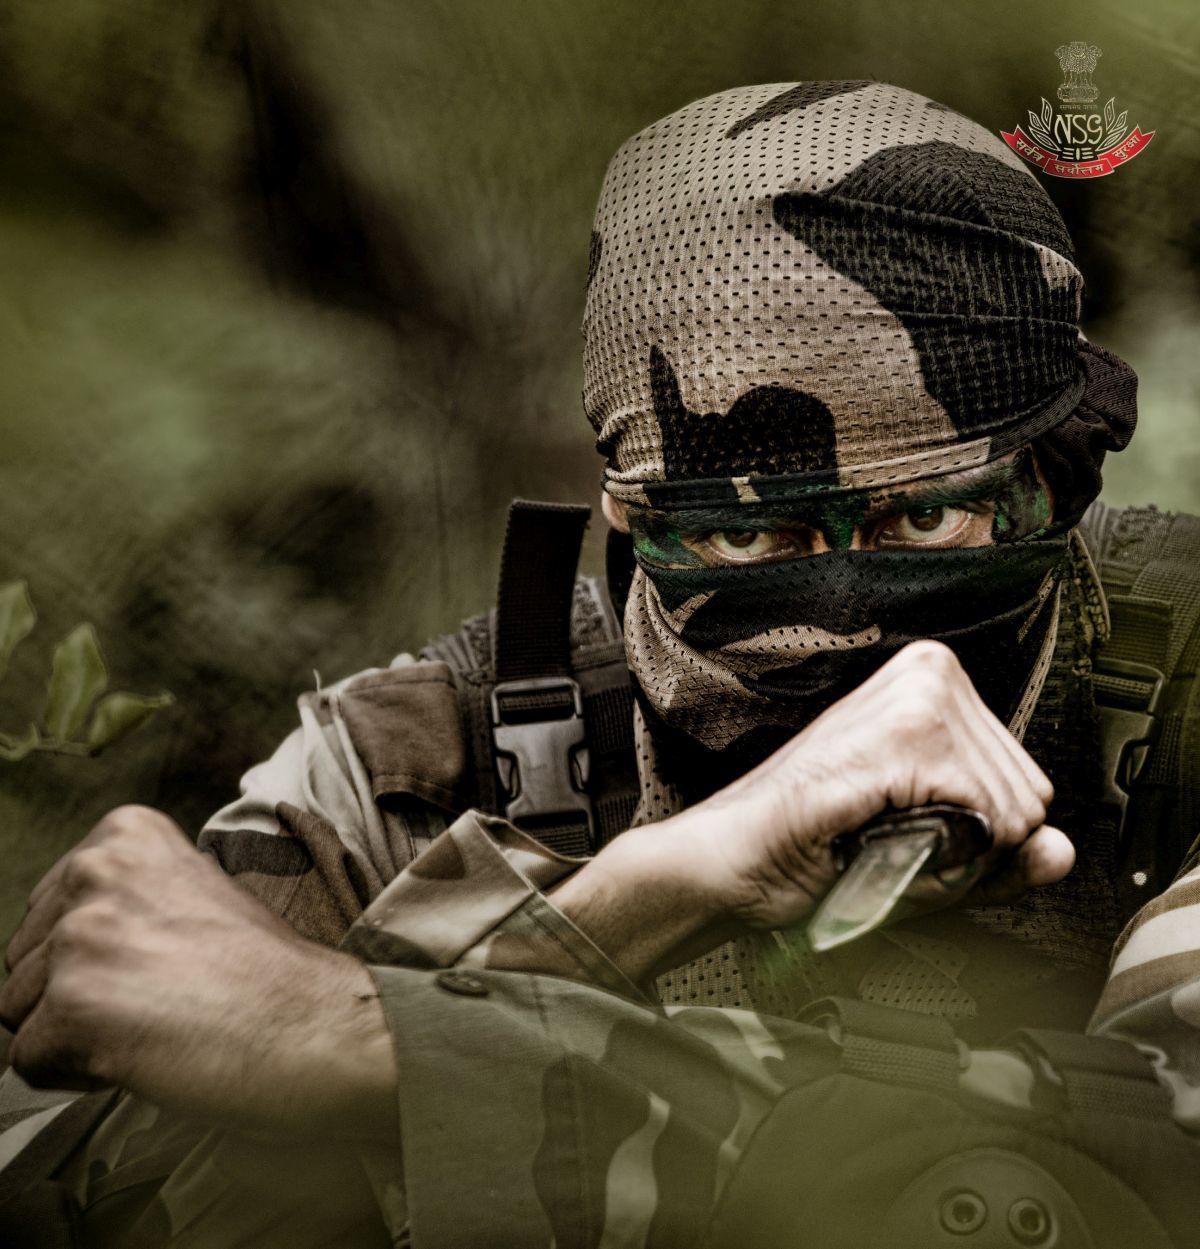 48+] Indian Army HD Wallpaper - WallpaperSafari